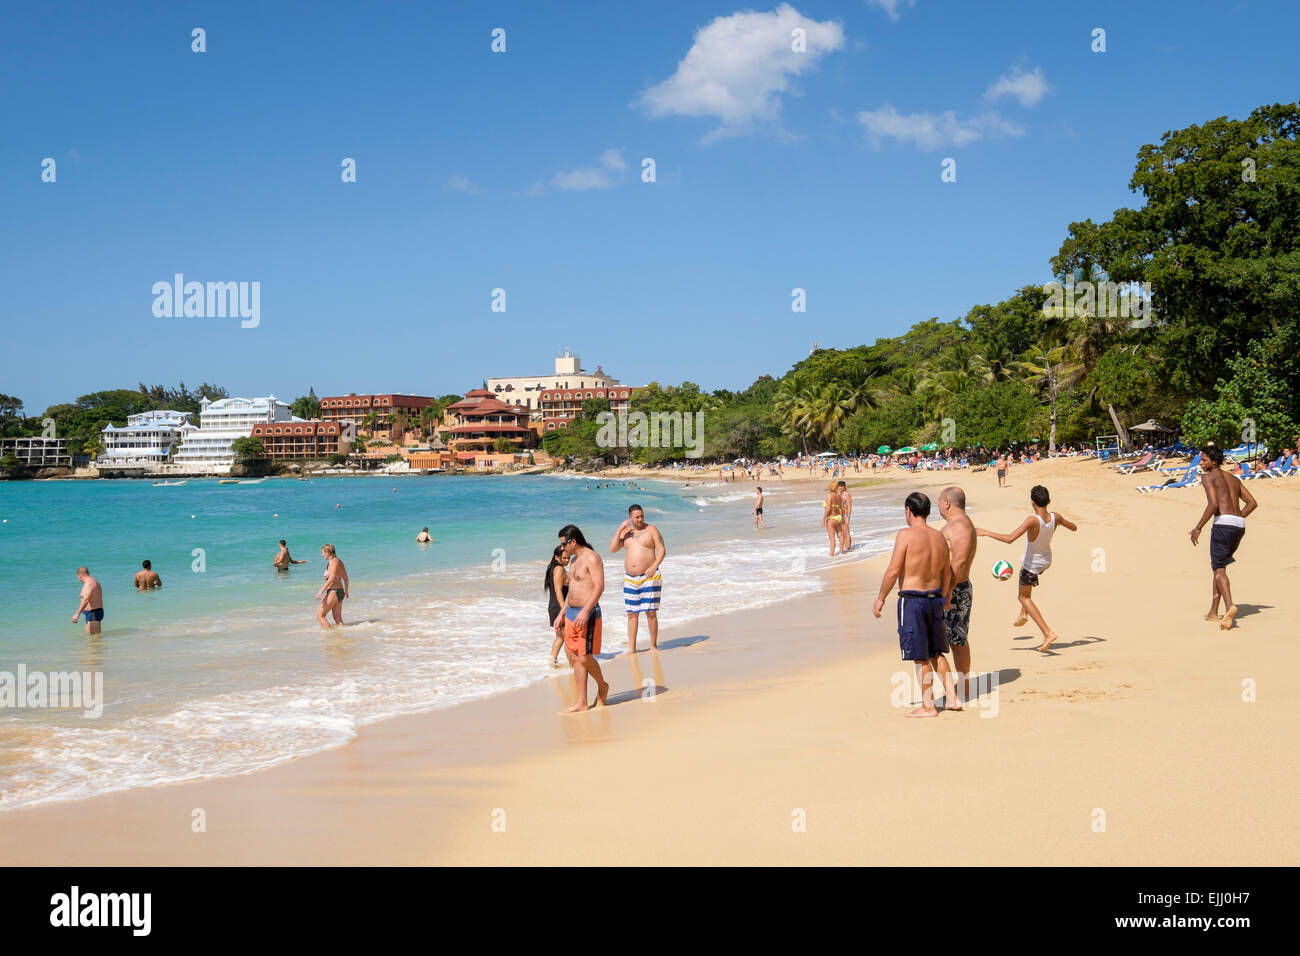 Les touristes et les habitants sur une plage de sable fin sur l'océan Atlantique à Holiday Resort de Sosua, République dominicaine, îles des Caraïbes Banque D'Images